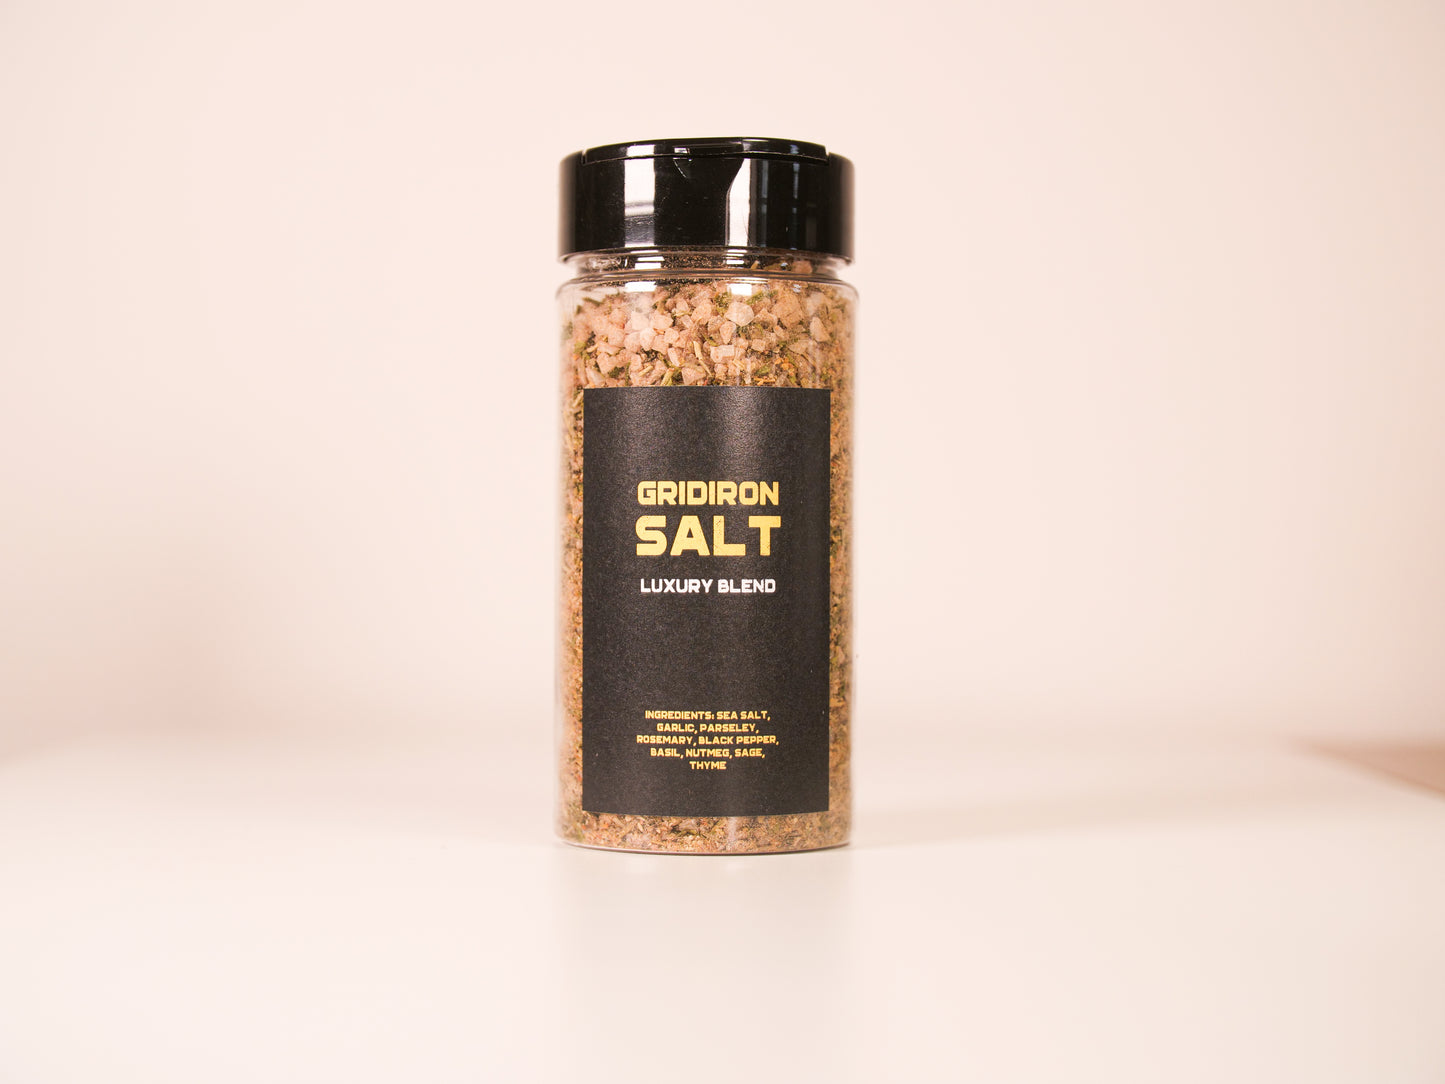 Gridiron Salt - Luxury Blend - Seasoned Sea Salt - 12 Pack - Restaurant Bundle